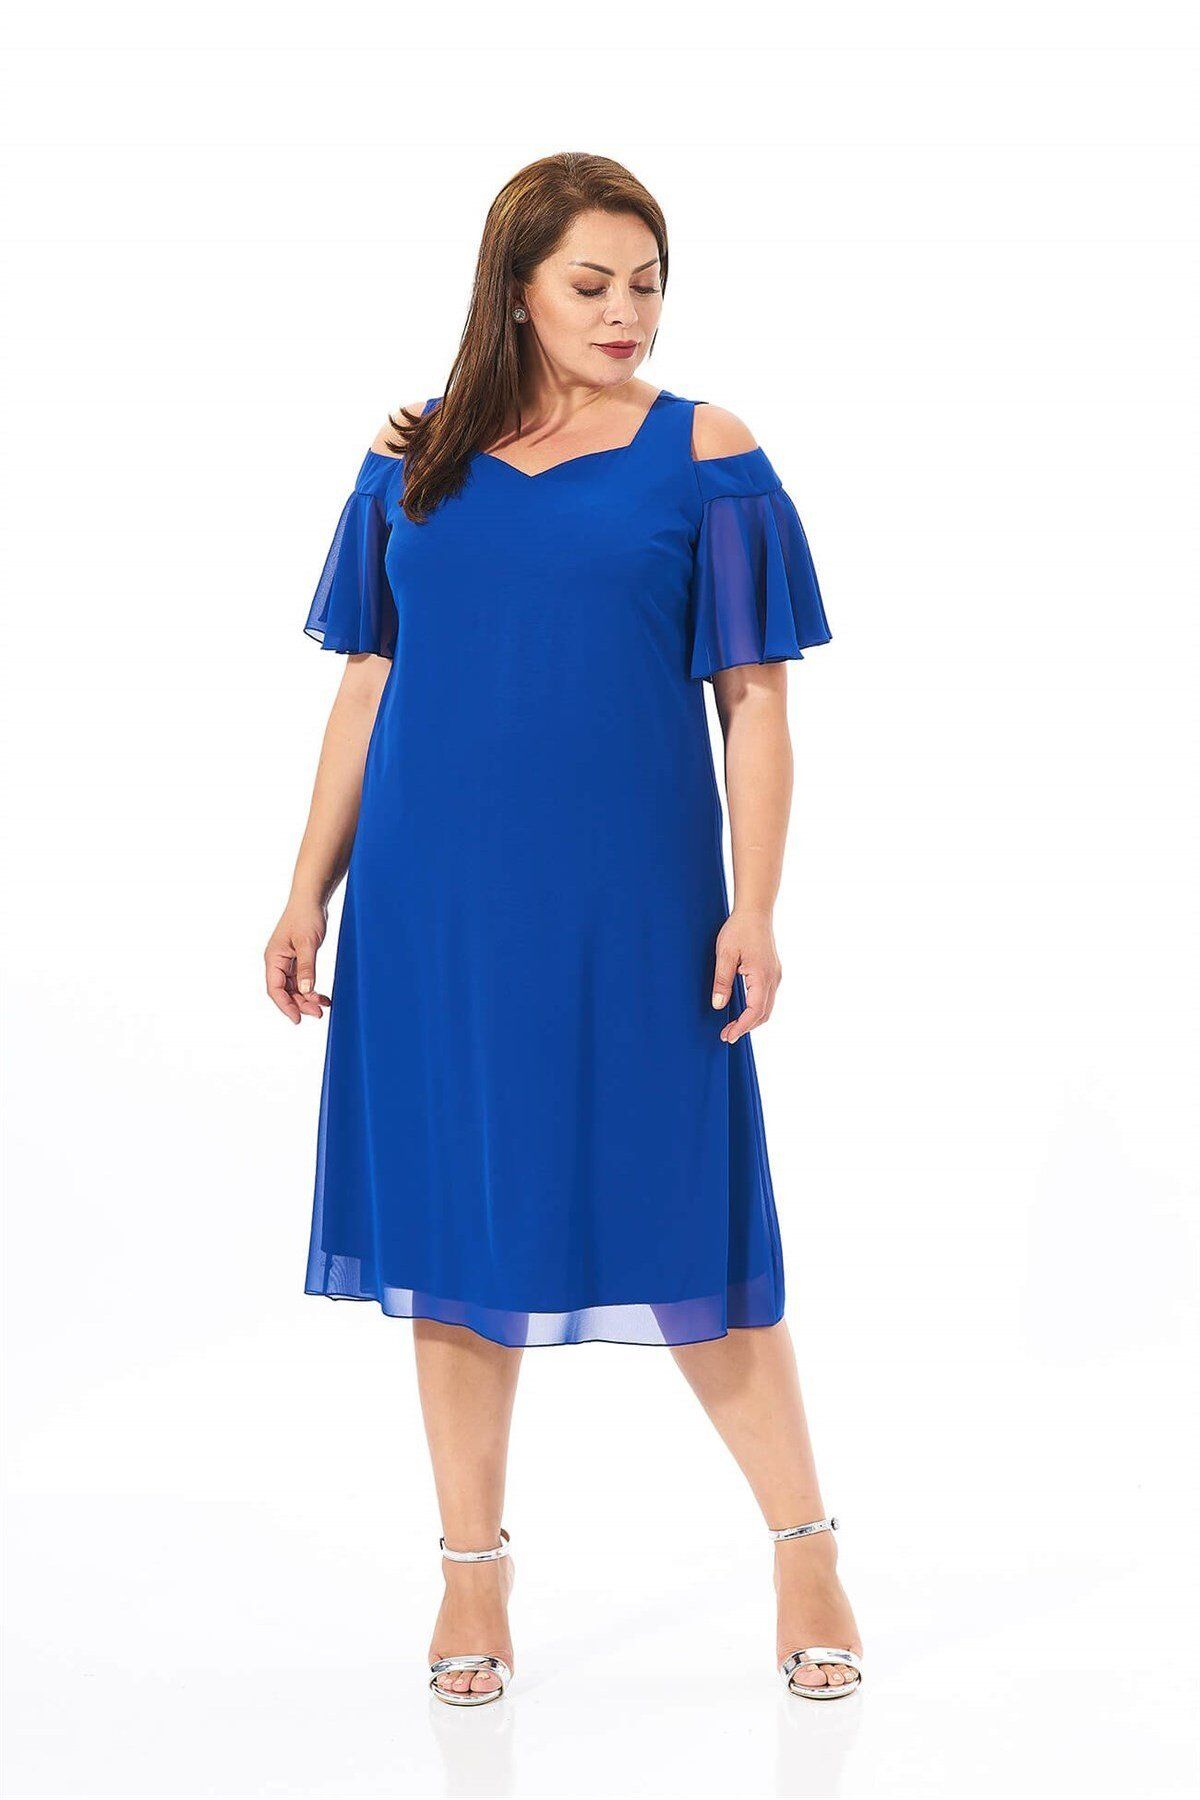 LİLAS XXL Büyük Beden Saks Mavisi Renkli Omuz Detaylı Şifon Abiye Elbise